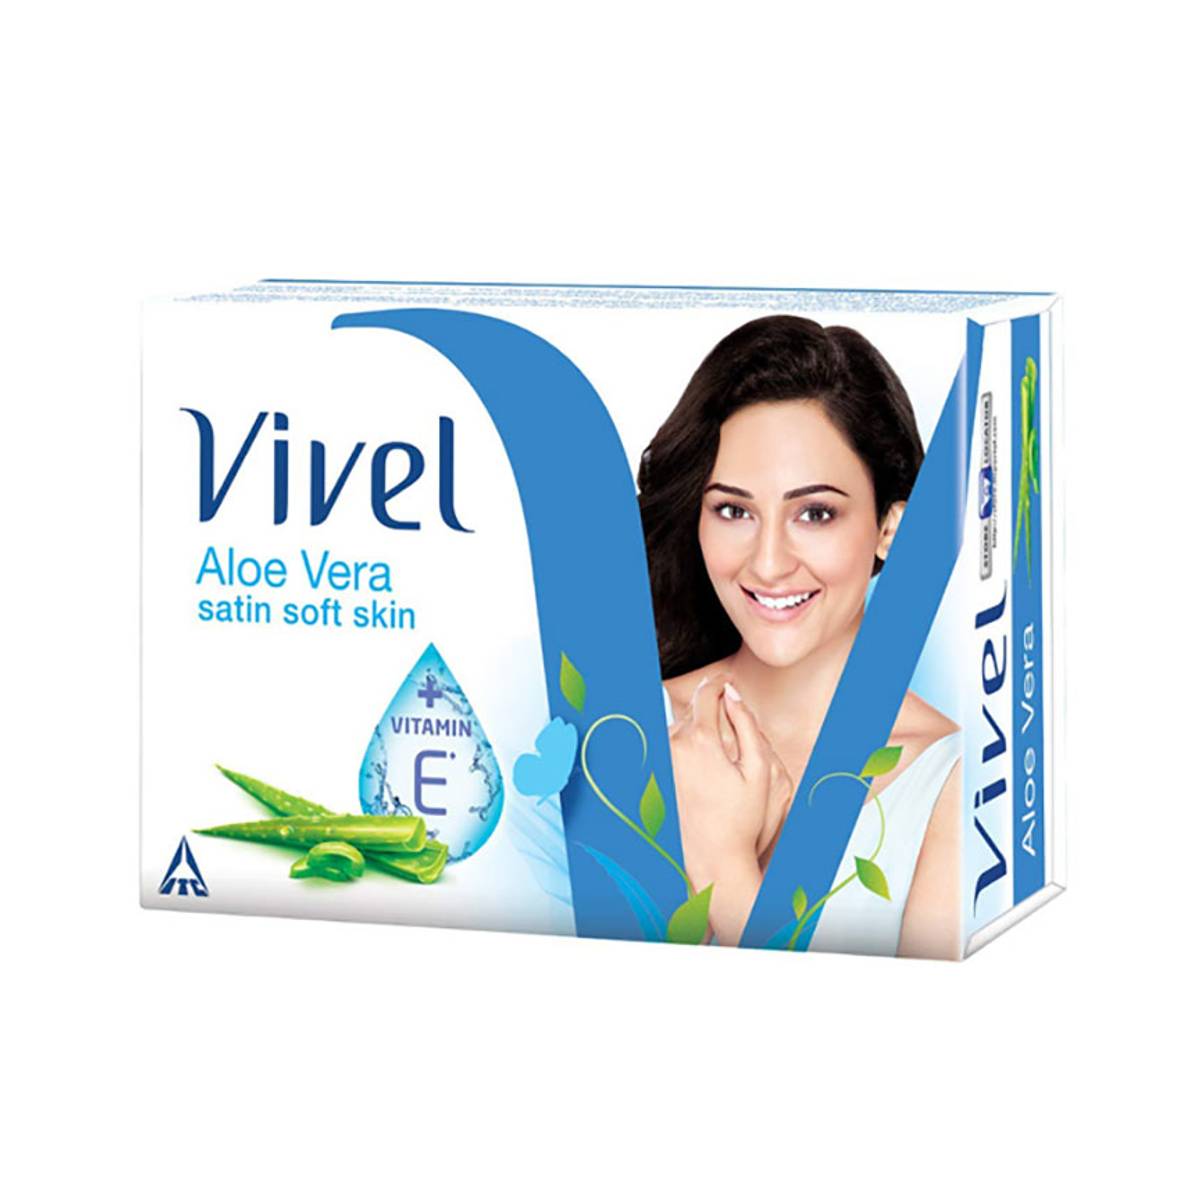 Vivel Aloevera Satin Soft Skin Soap, 75g